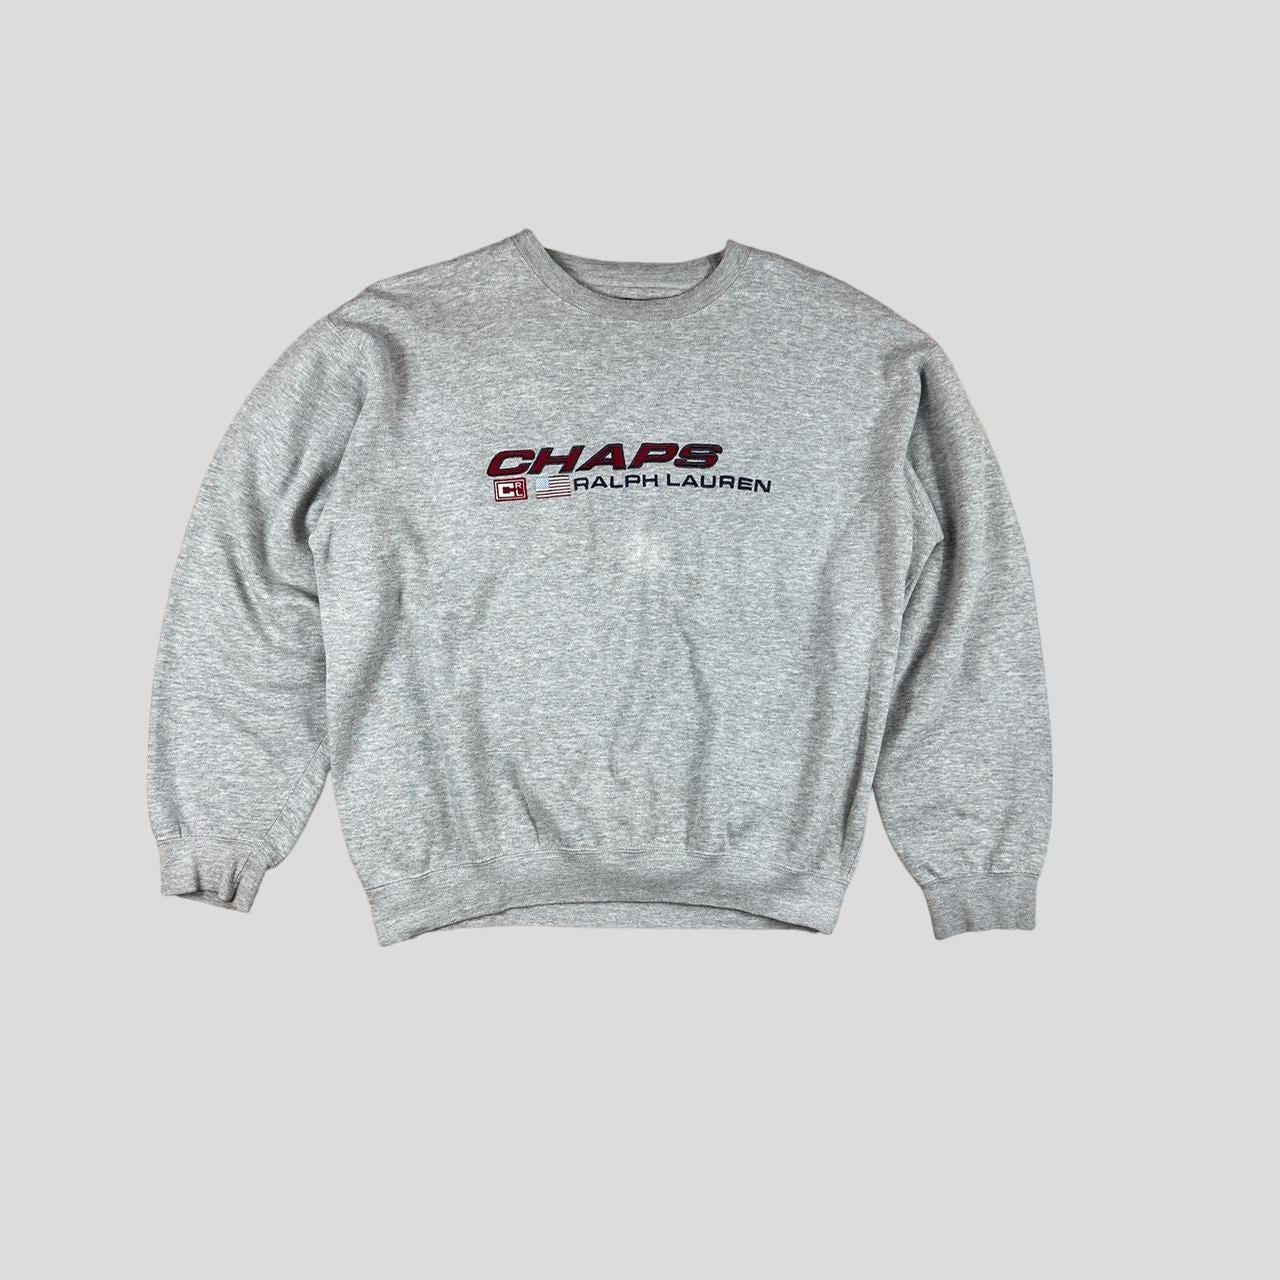 Chaps Ralph Lauren sweatshirt